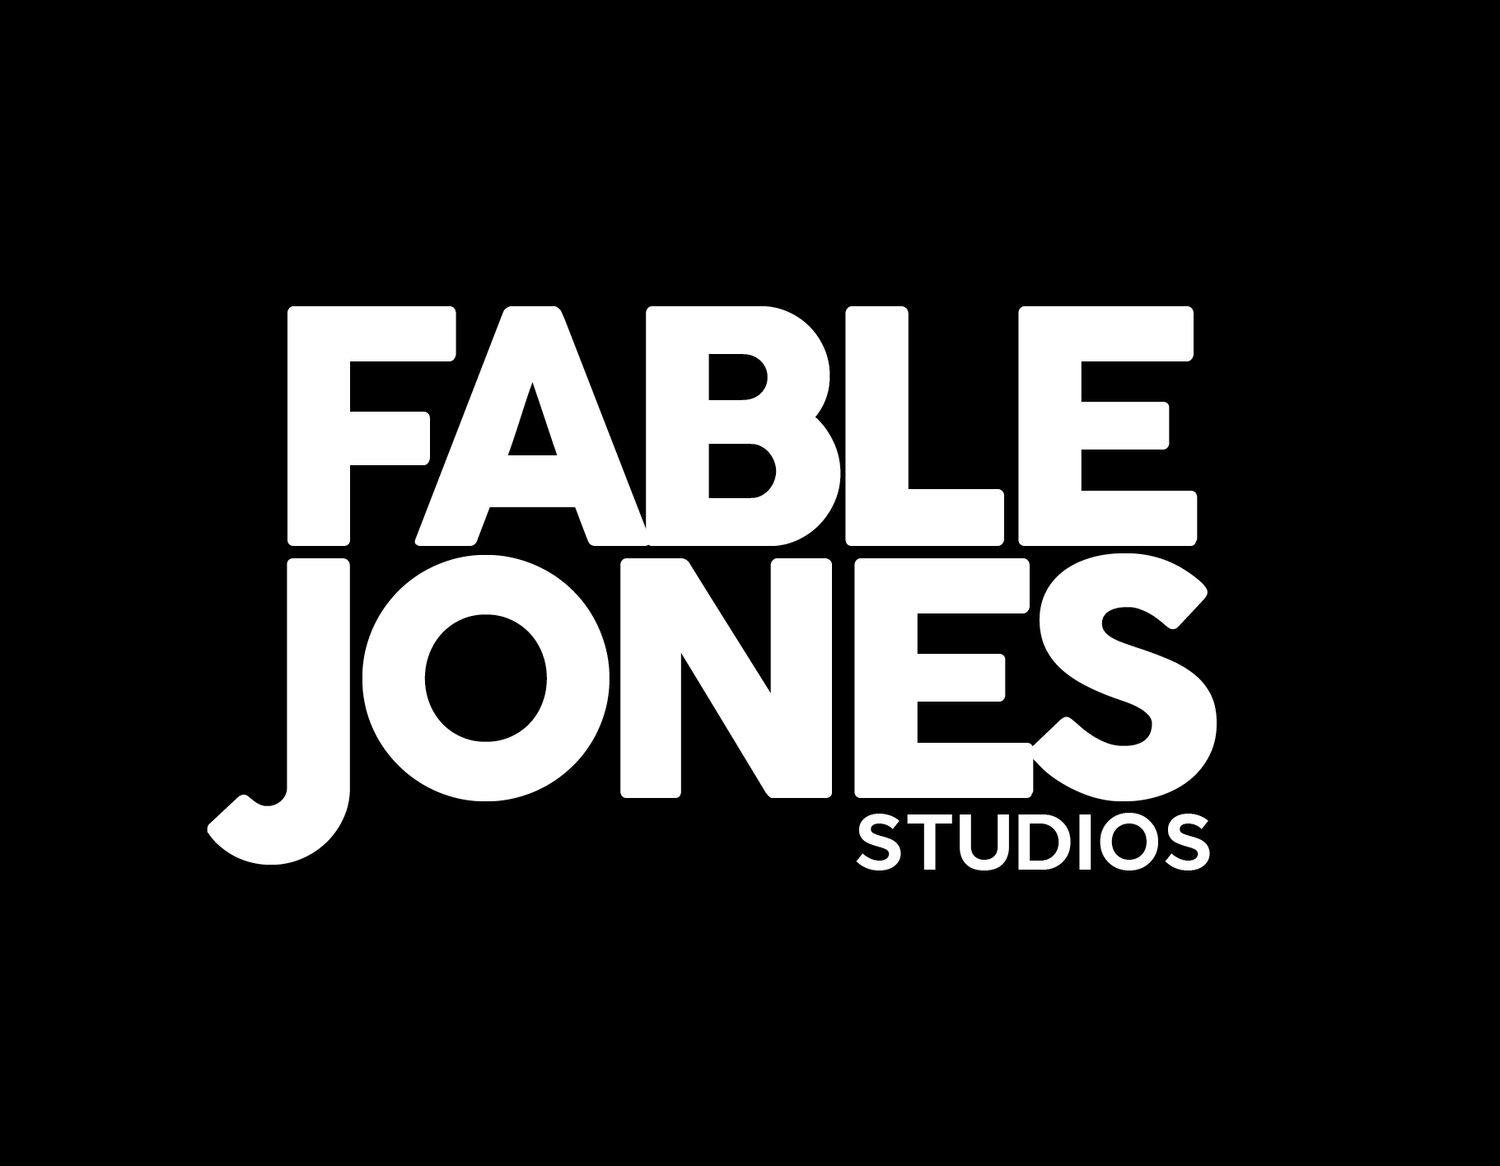 Fable Jones Studios LLC